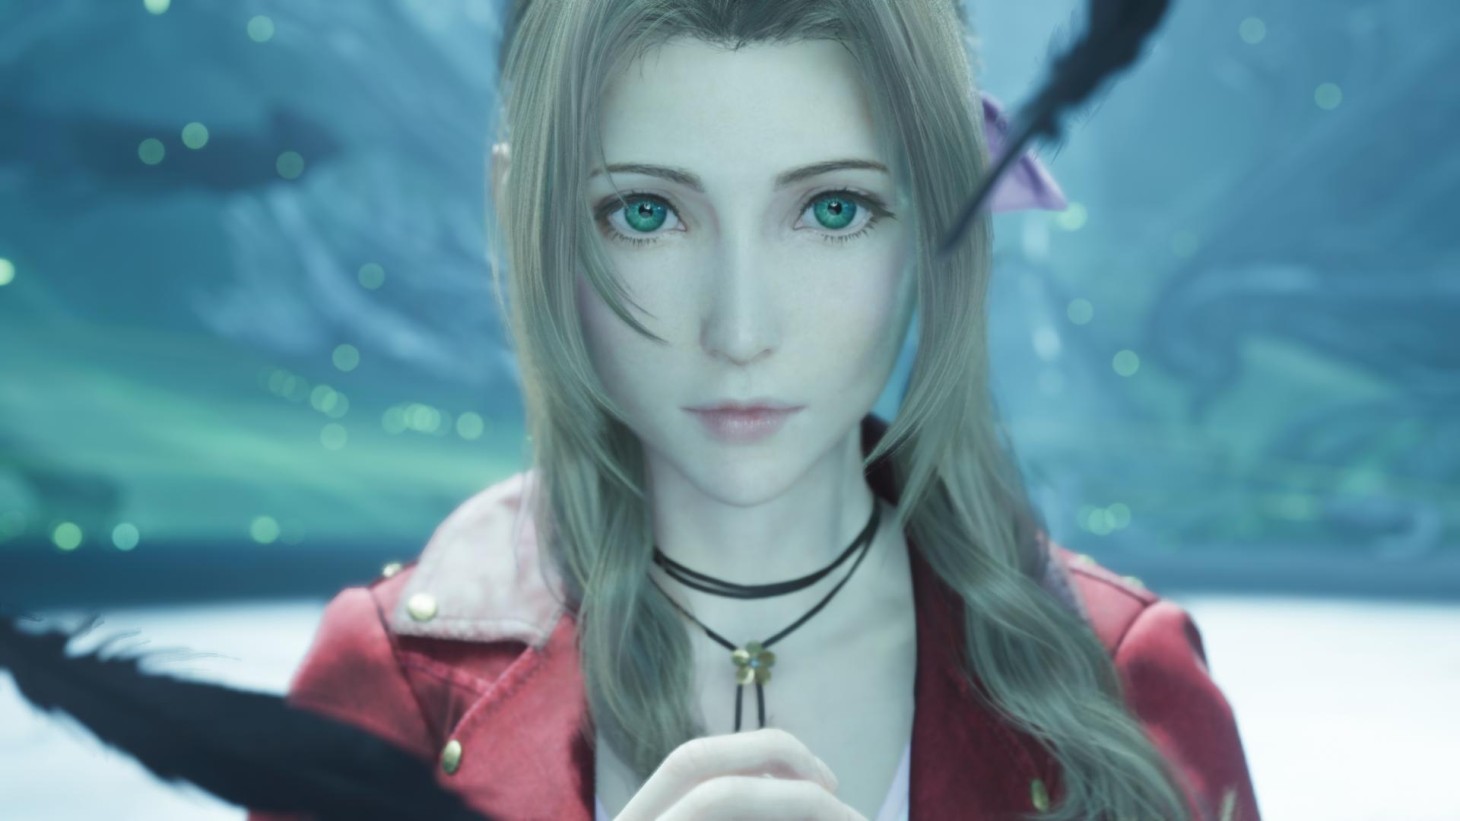 Final Fantasy VII Rebirth Preview - Square Enix Talks Aerith's Big Scene -  Game Informer